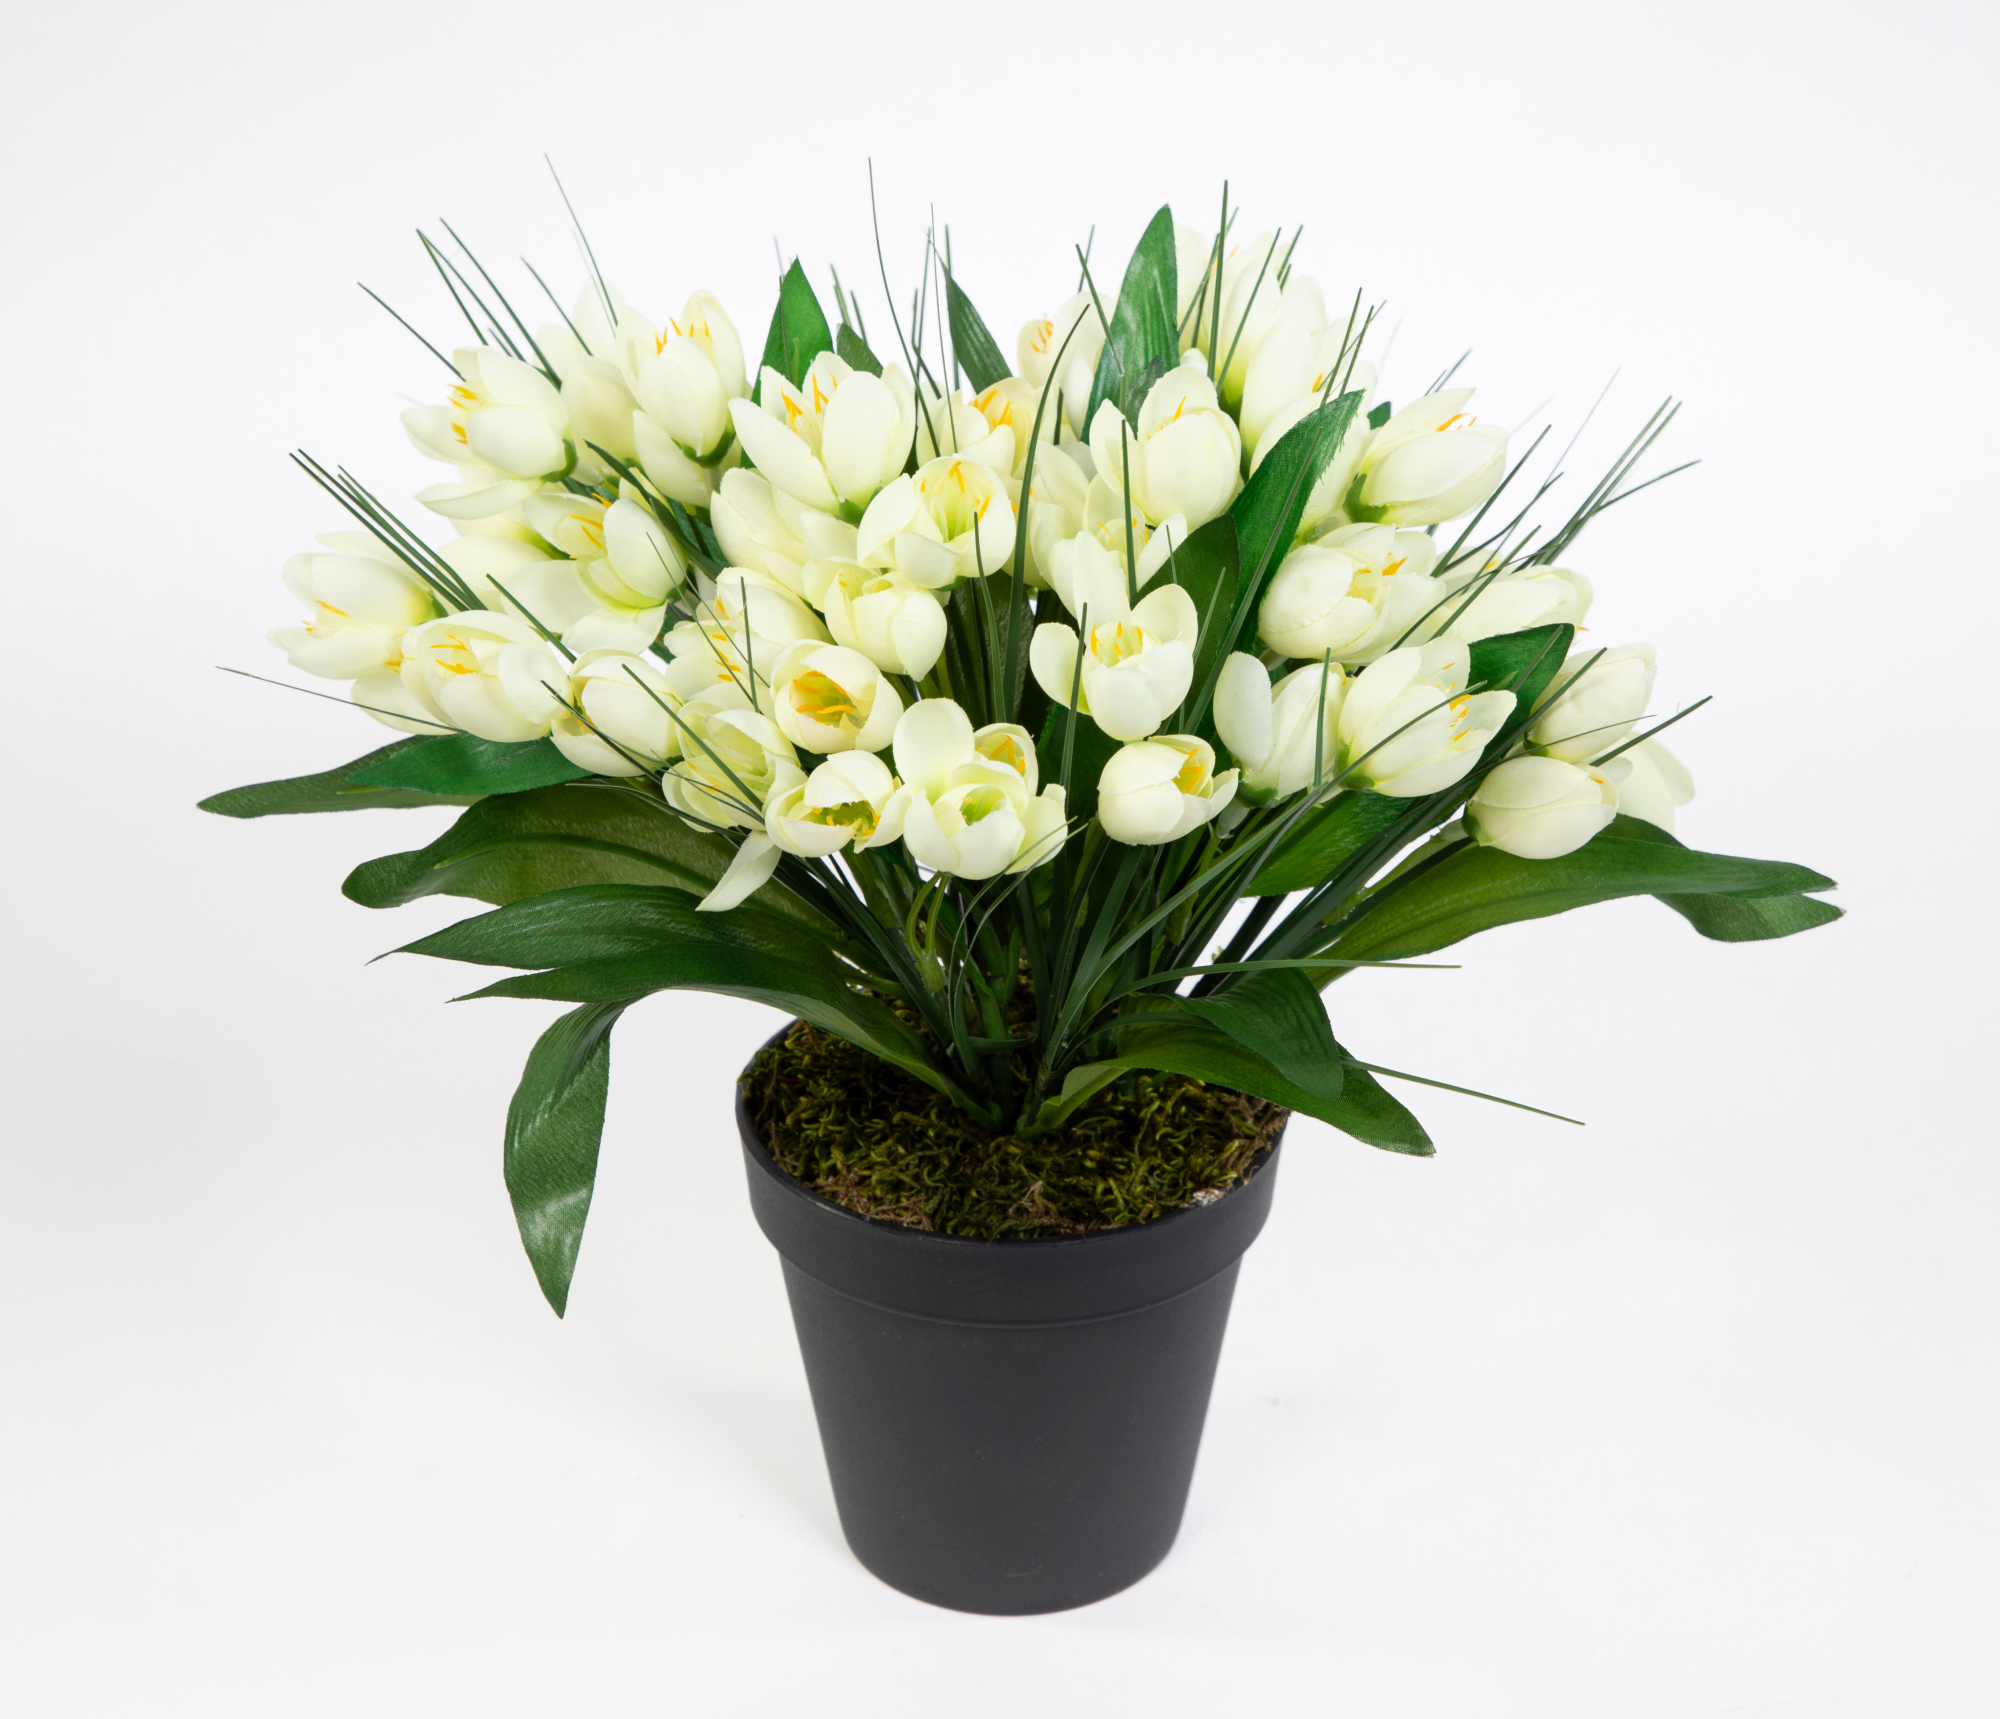 Krokusbusch 28cm weiß-creme im Topf PM Kunstpflanzen Kunstblumen künstlicher Crocus Krokus Blumen